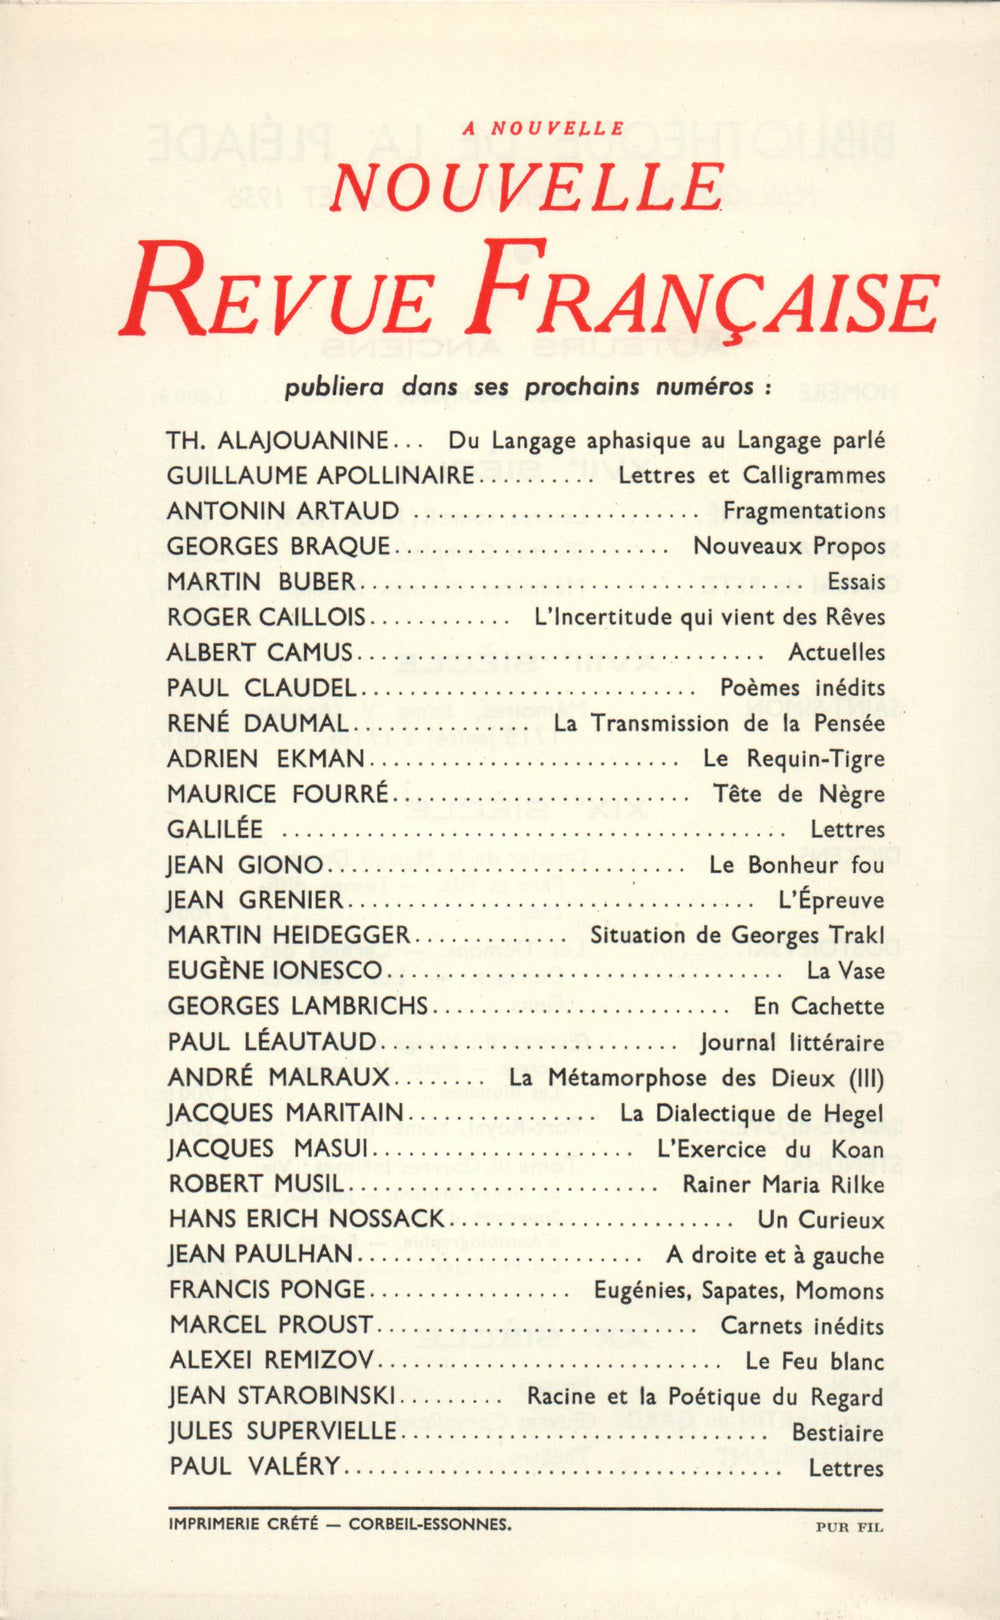 La Nouvelle Nouvelle Revue Française N' 44 (Aoűt 1956)